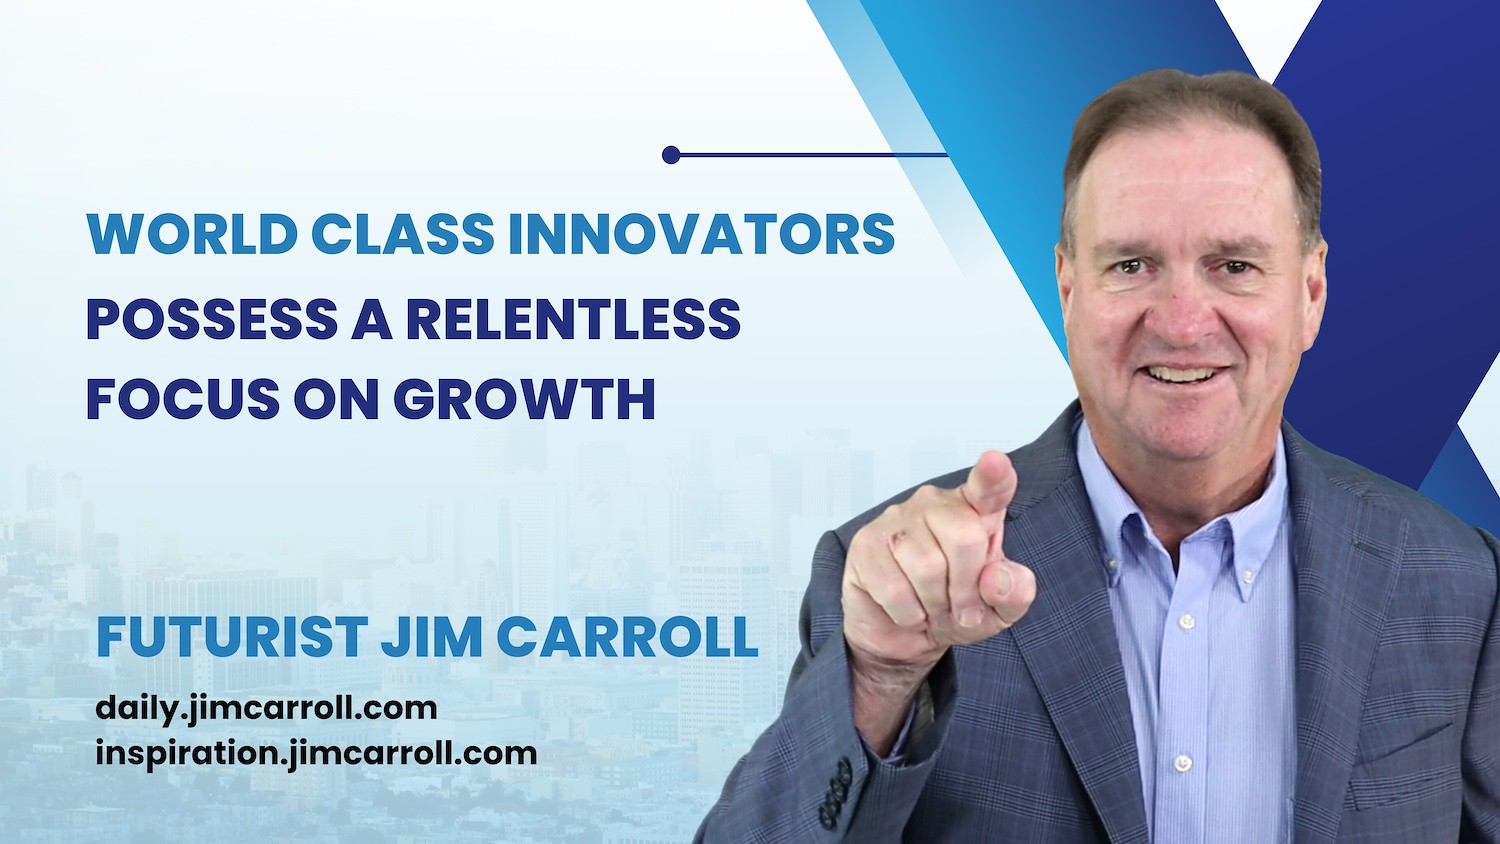 "World class innovators possess a relentless focus on growth"- Futurist Jim Carroll